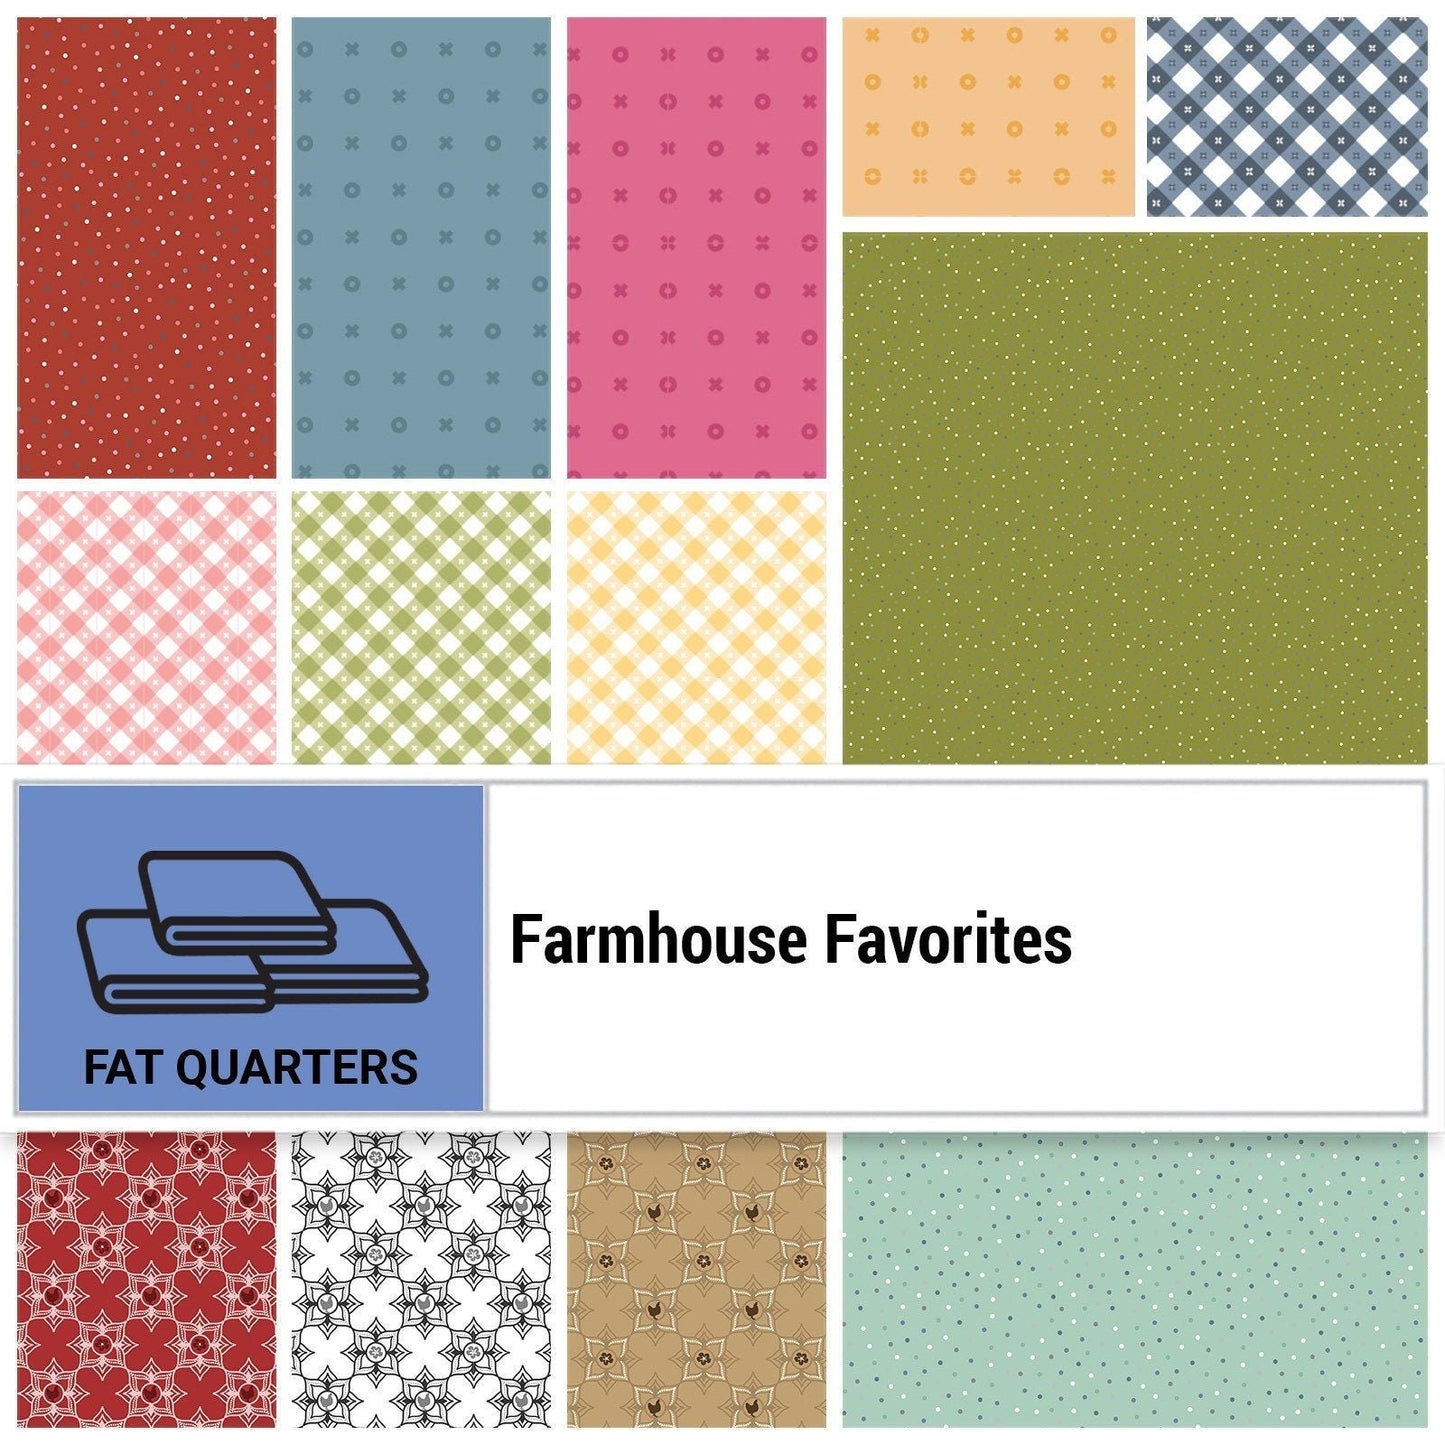 Farmhouse Favorites by Poppie Cotton Quilter&#39;s Cotton Fat Quarter Bundle. 36 piece collection 18 inch x 22 inch squares.